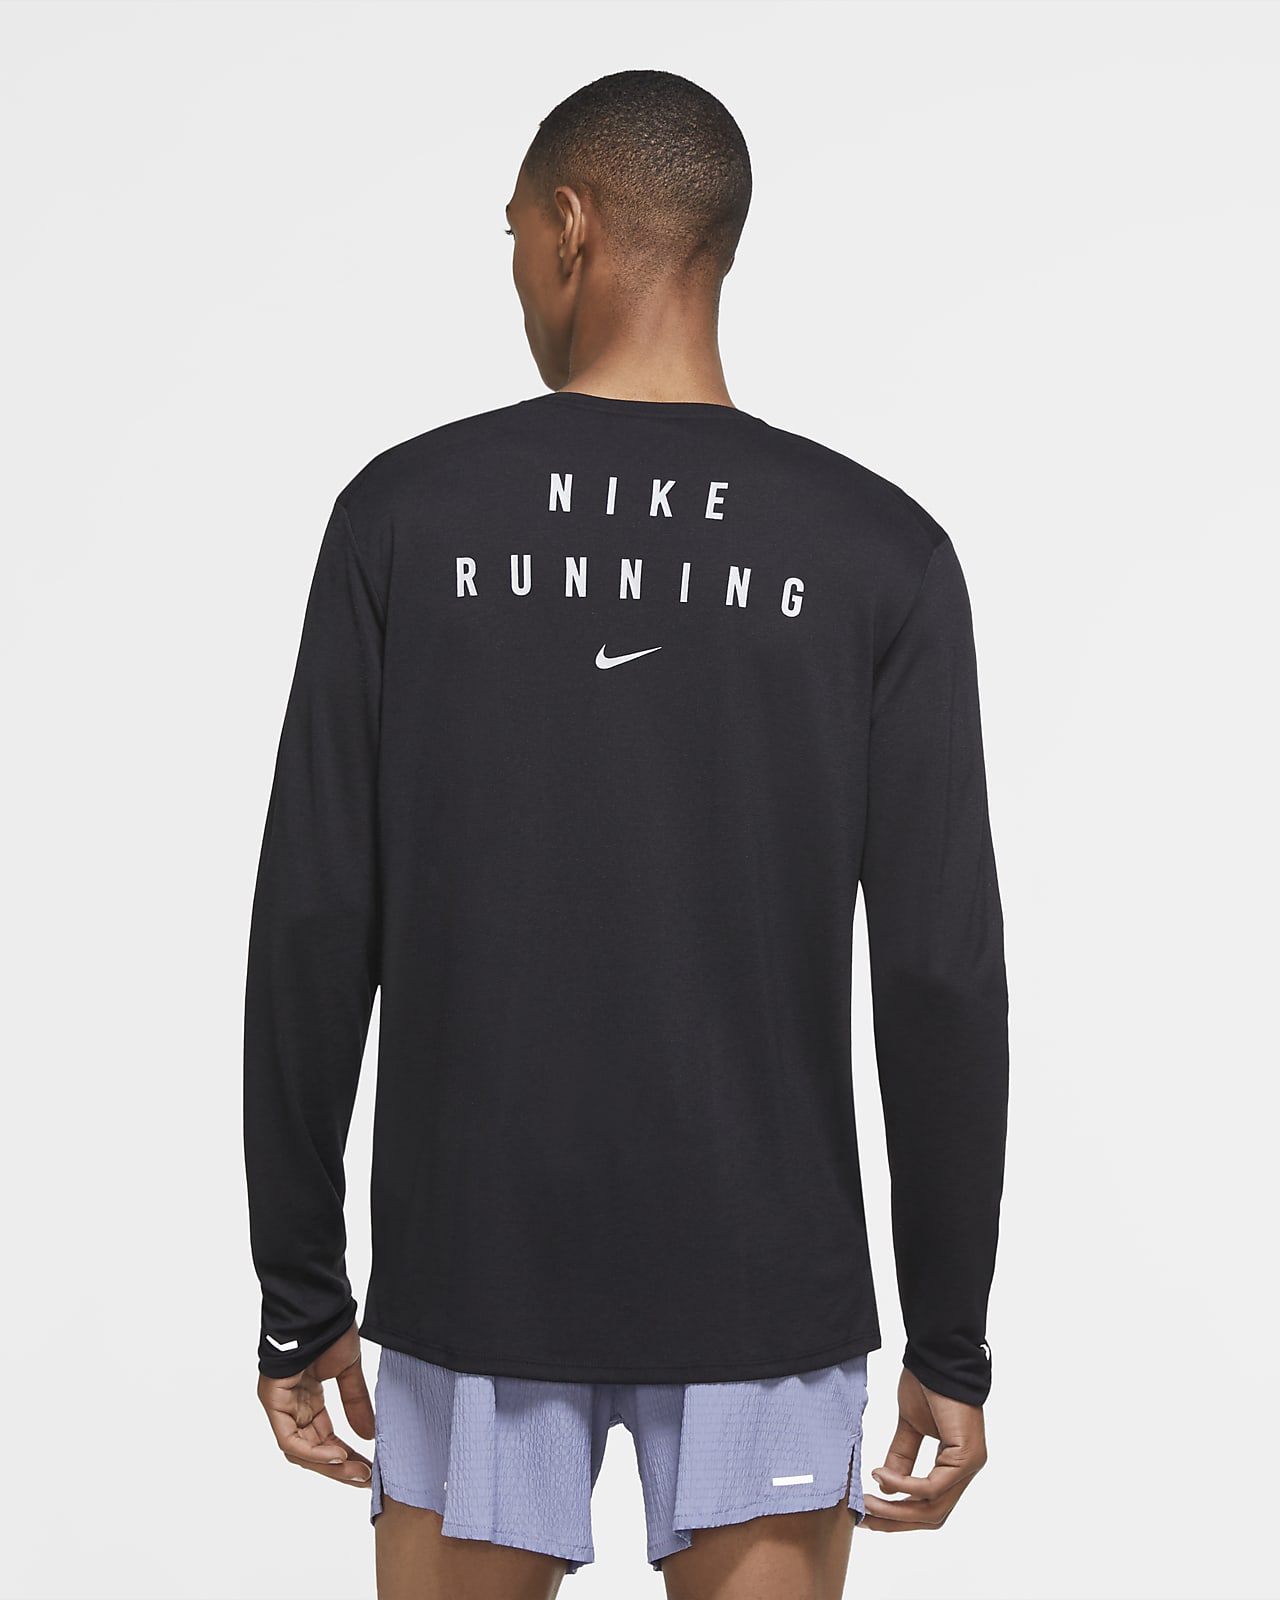 nike runner shirt